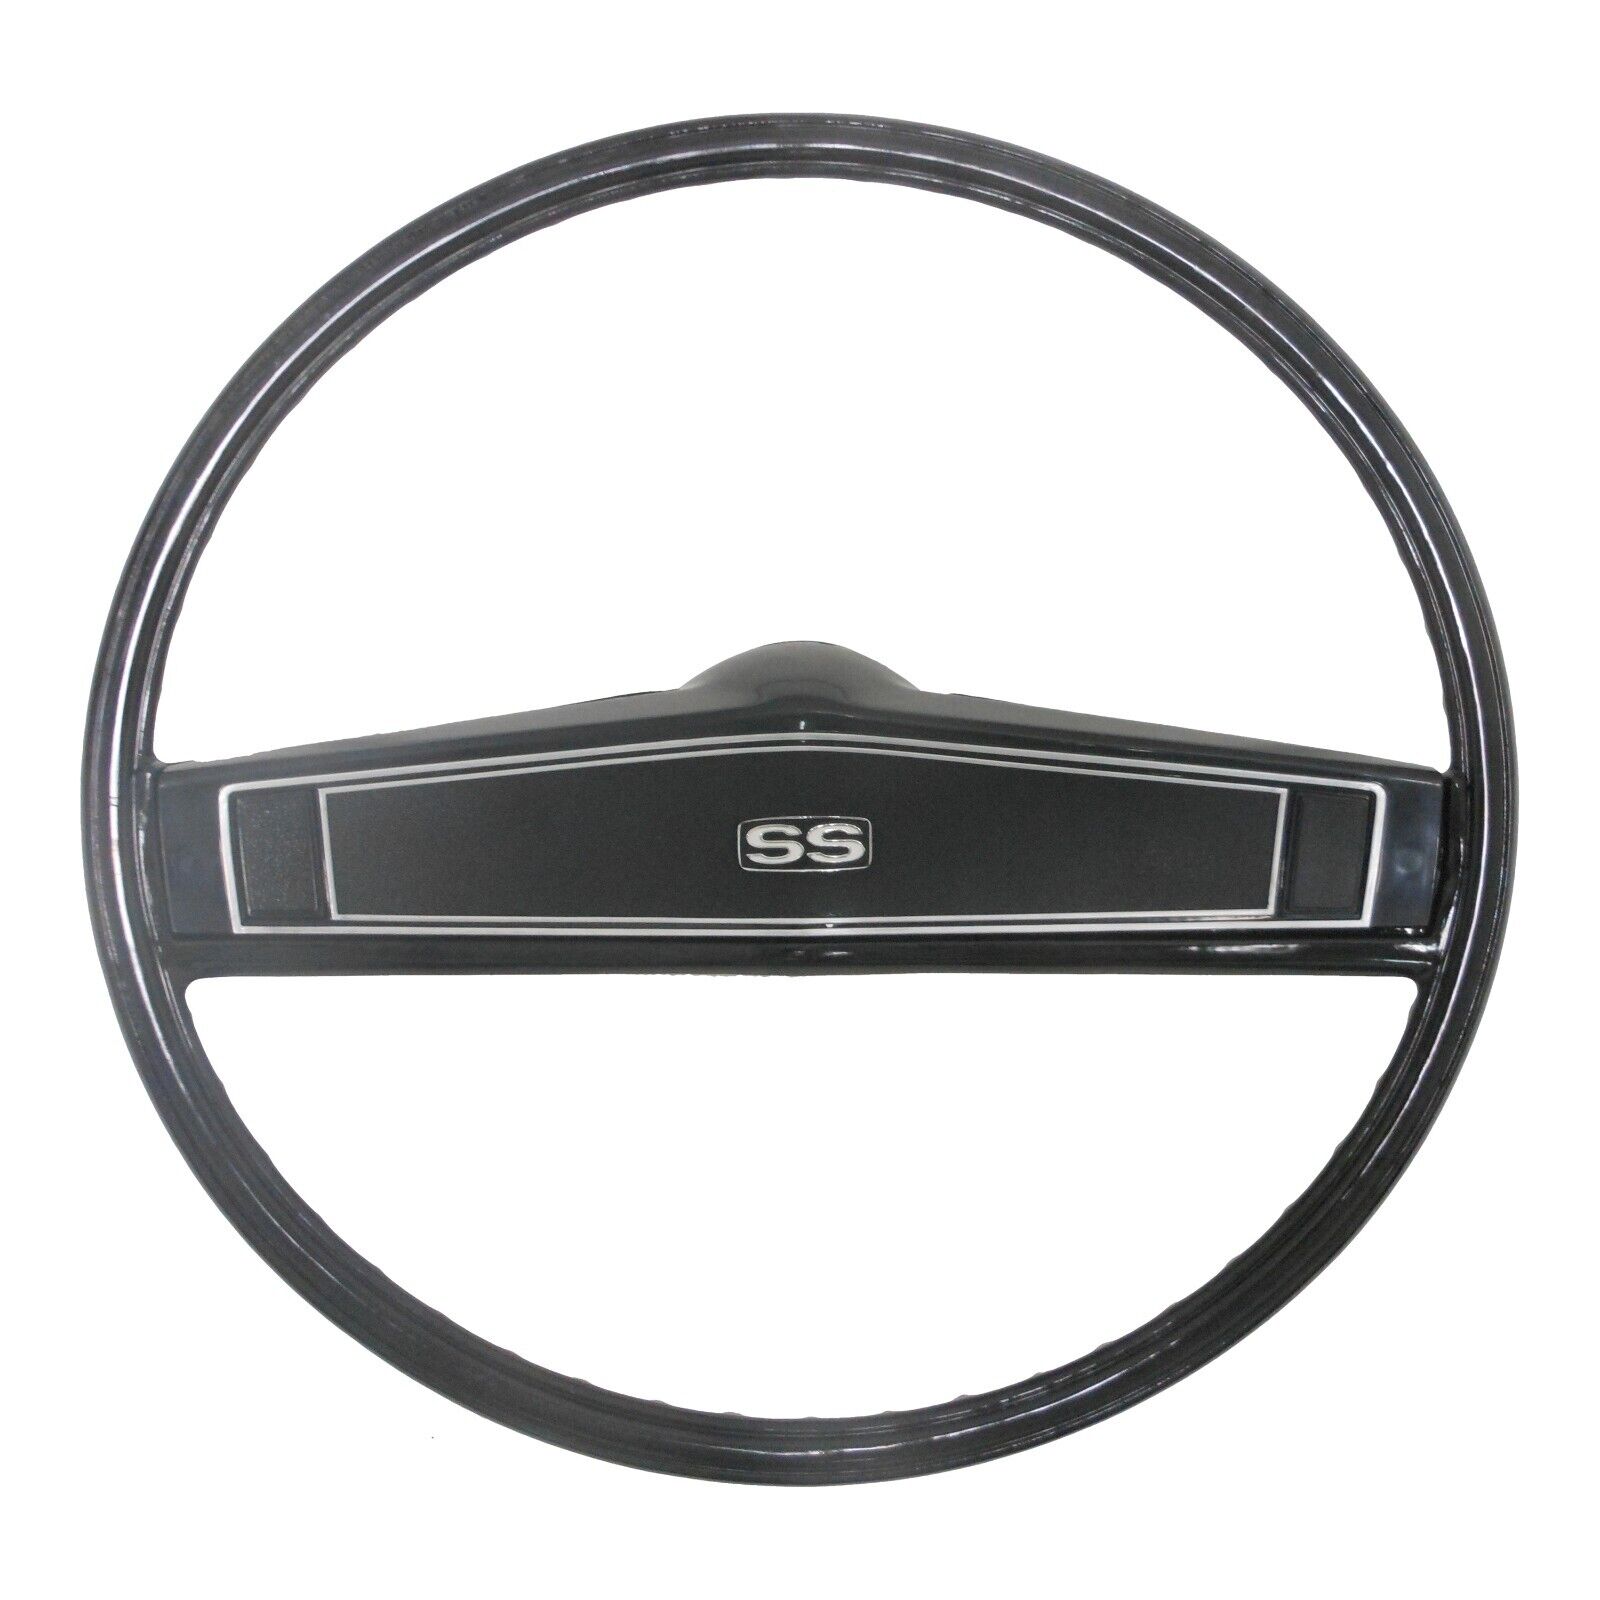 SS Steering Wheel Kit for 69 Camaro/69-72 Nova/69-70 Chevelle